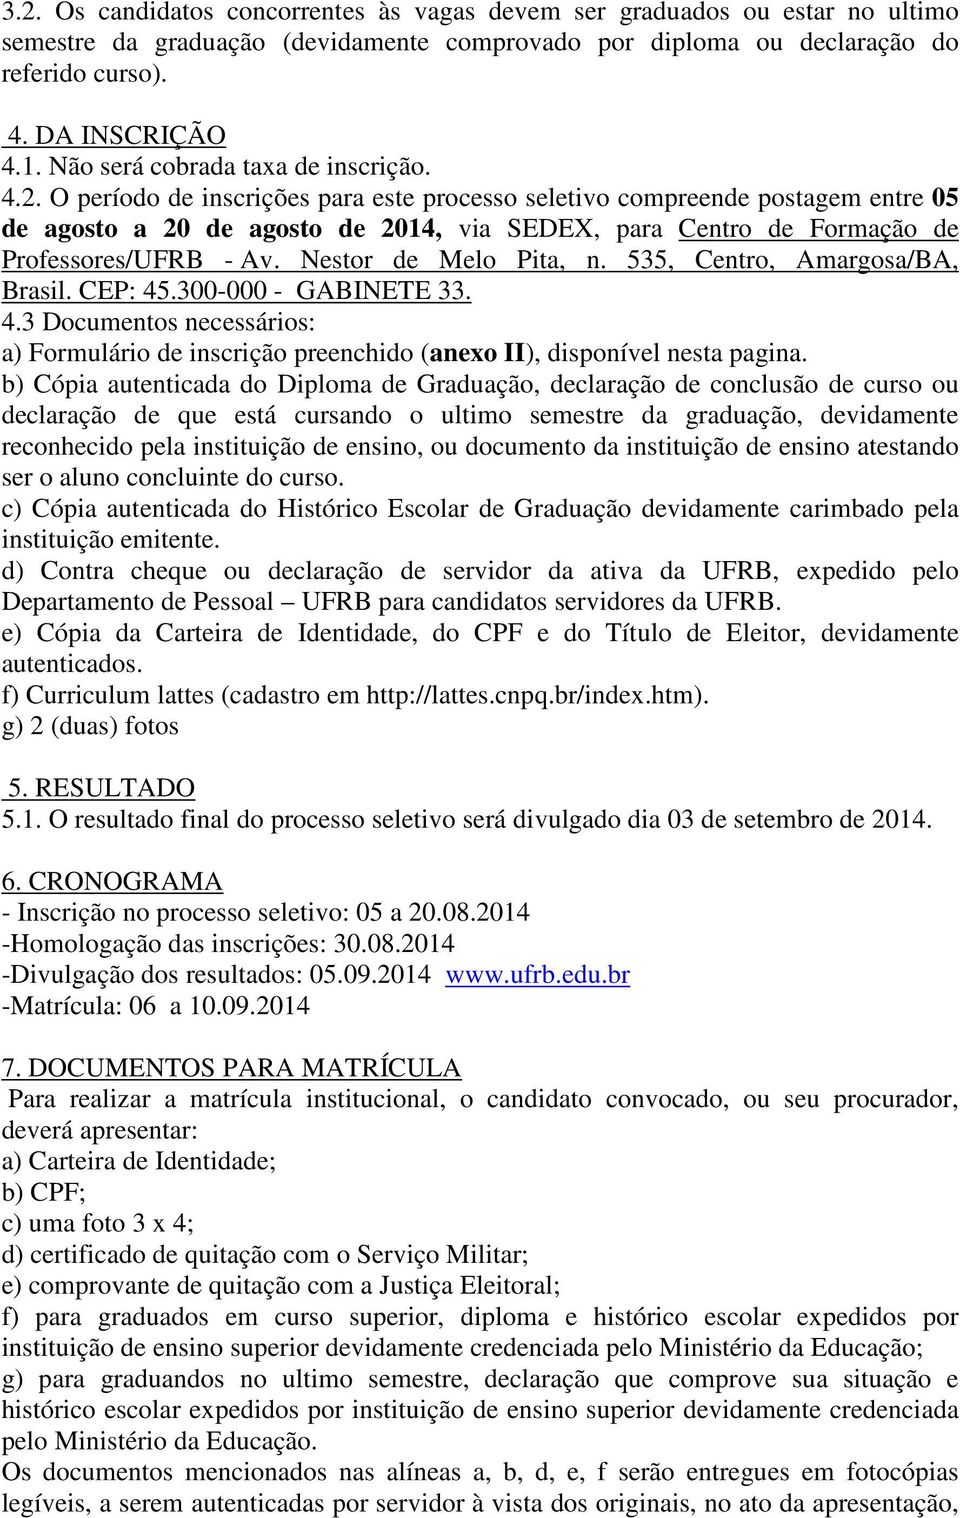 O período de inscrições para este processo seletivo compreende postagem entre 05 de agosto a 20 de agosto de 2014, via SEDEX, para Centro de Formação de Professores/UFRB - Av. Nestor de Melo Pita, n.